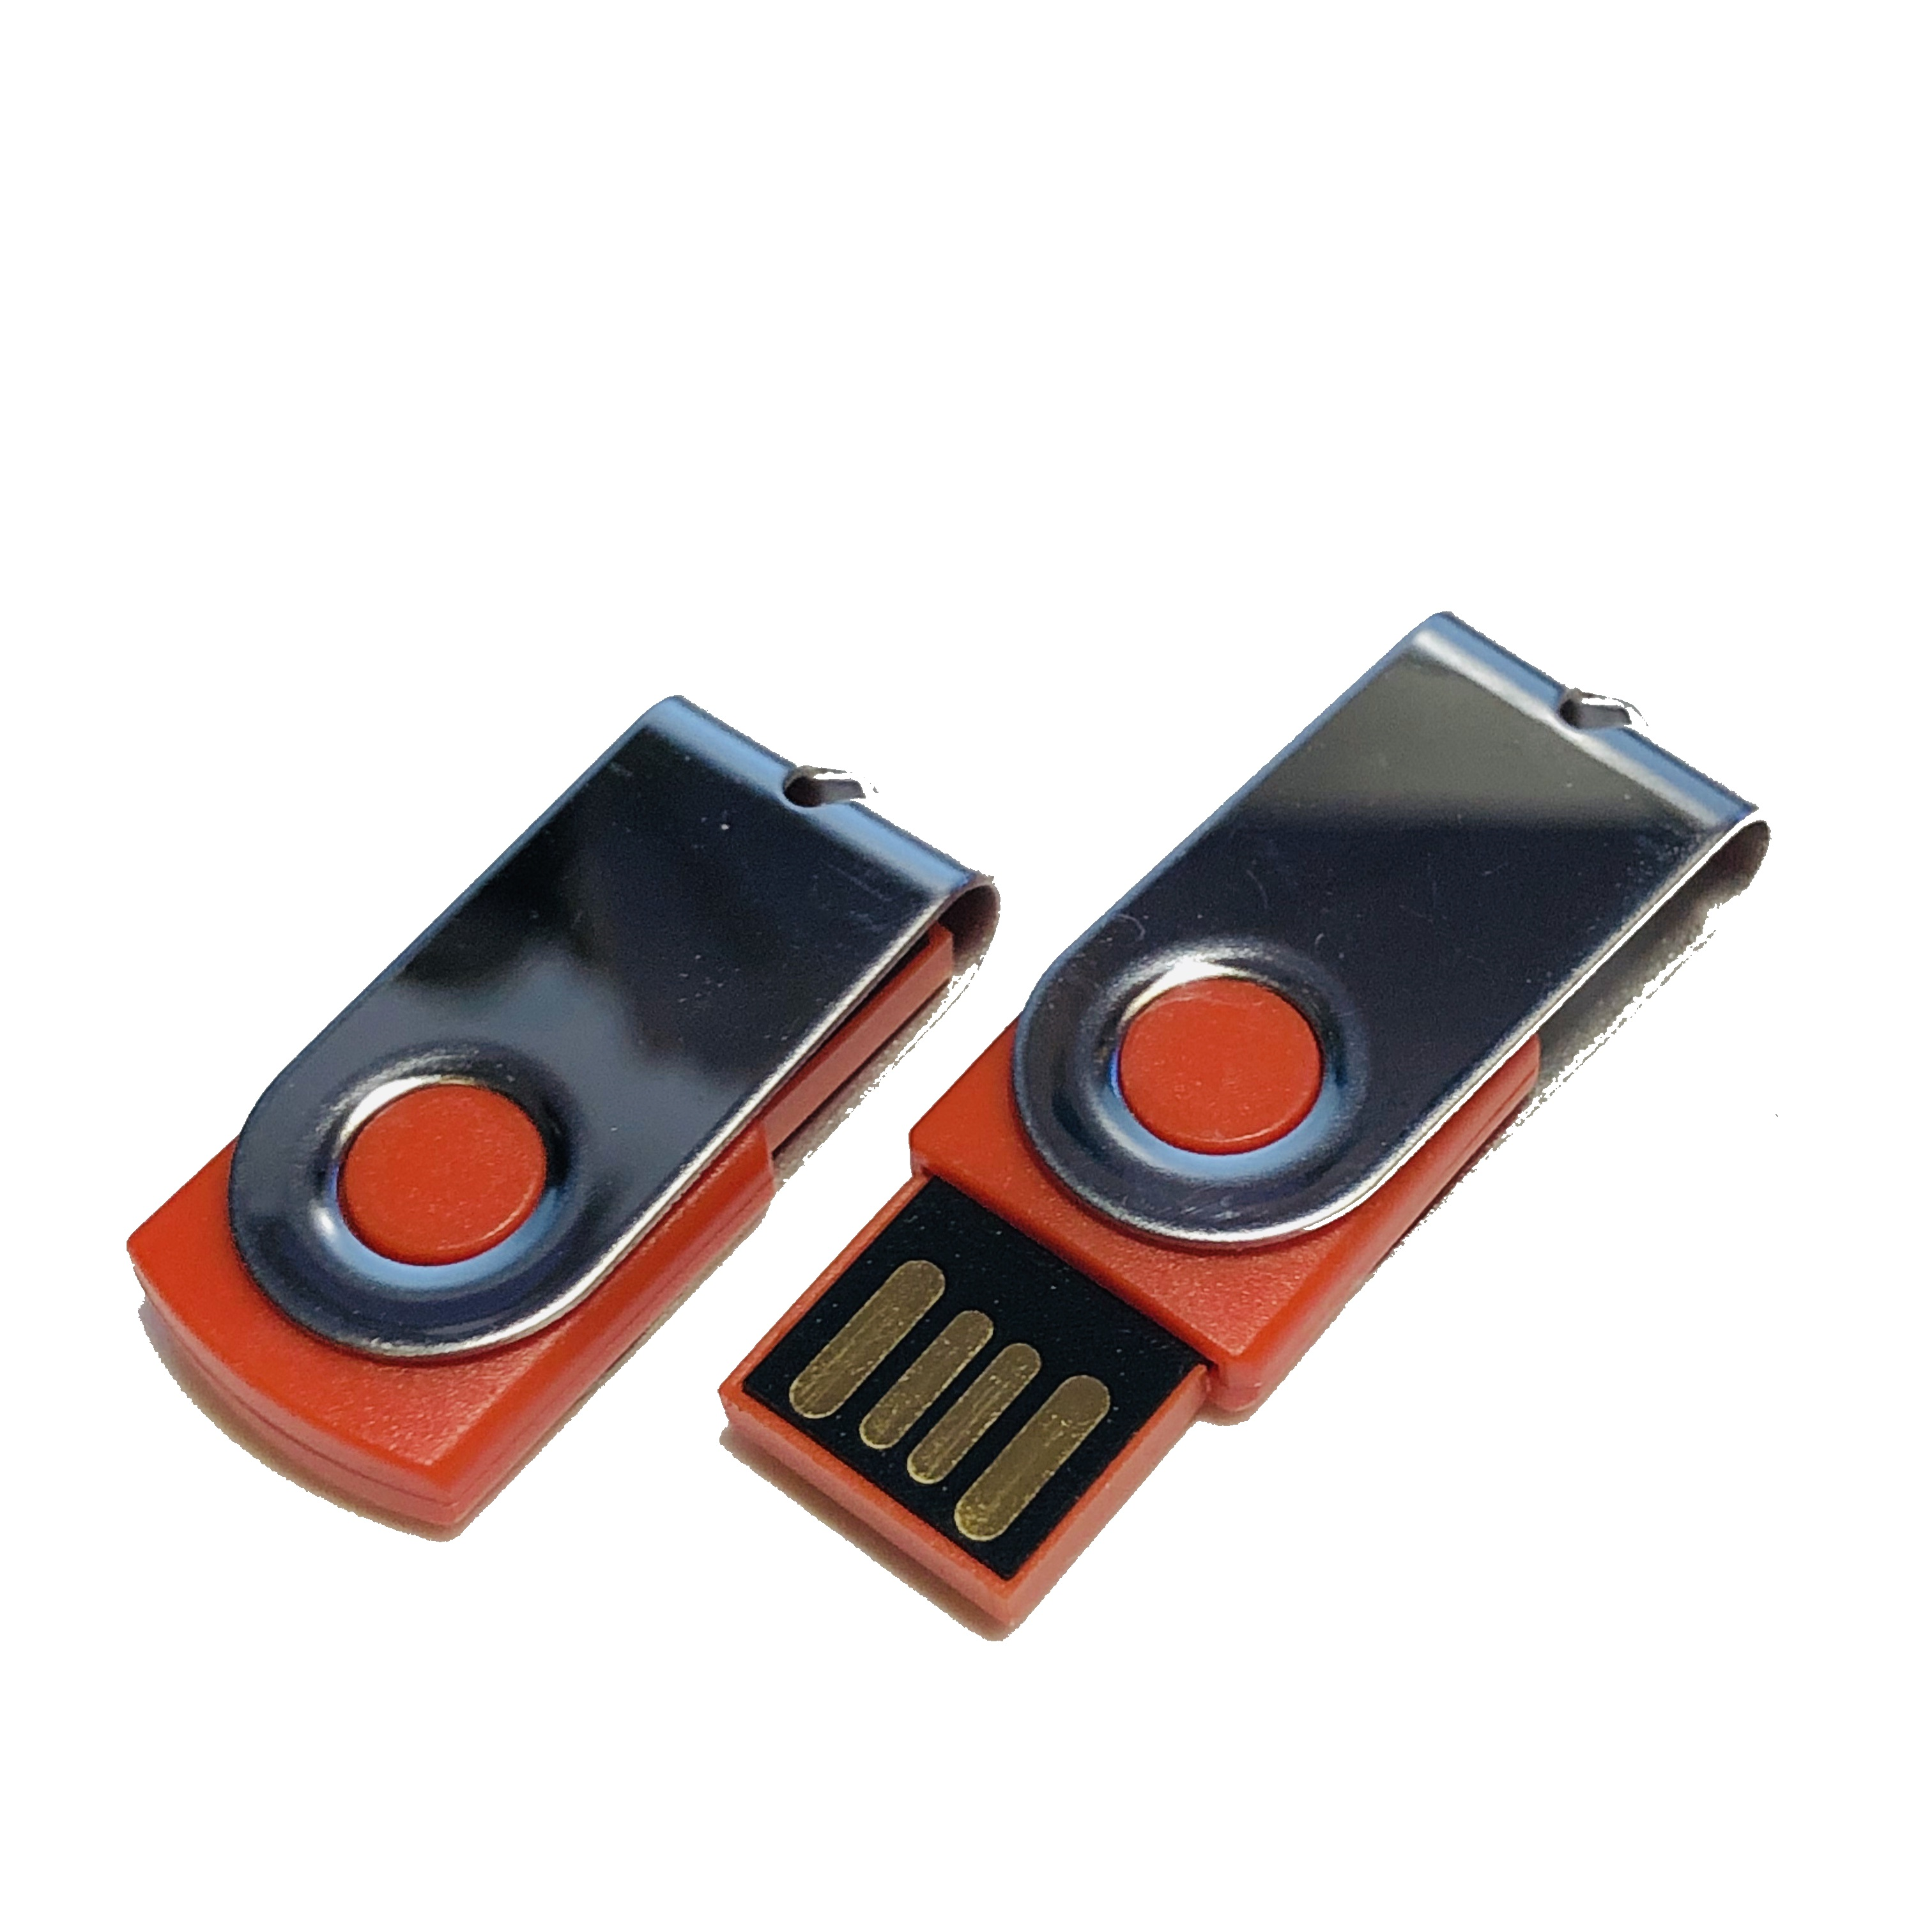 MINI-SWIVEL USB 16 GERMANY ® GB) USB-Stick (Rot-Chrome,